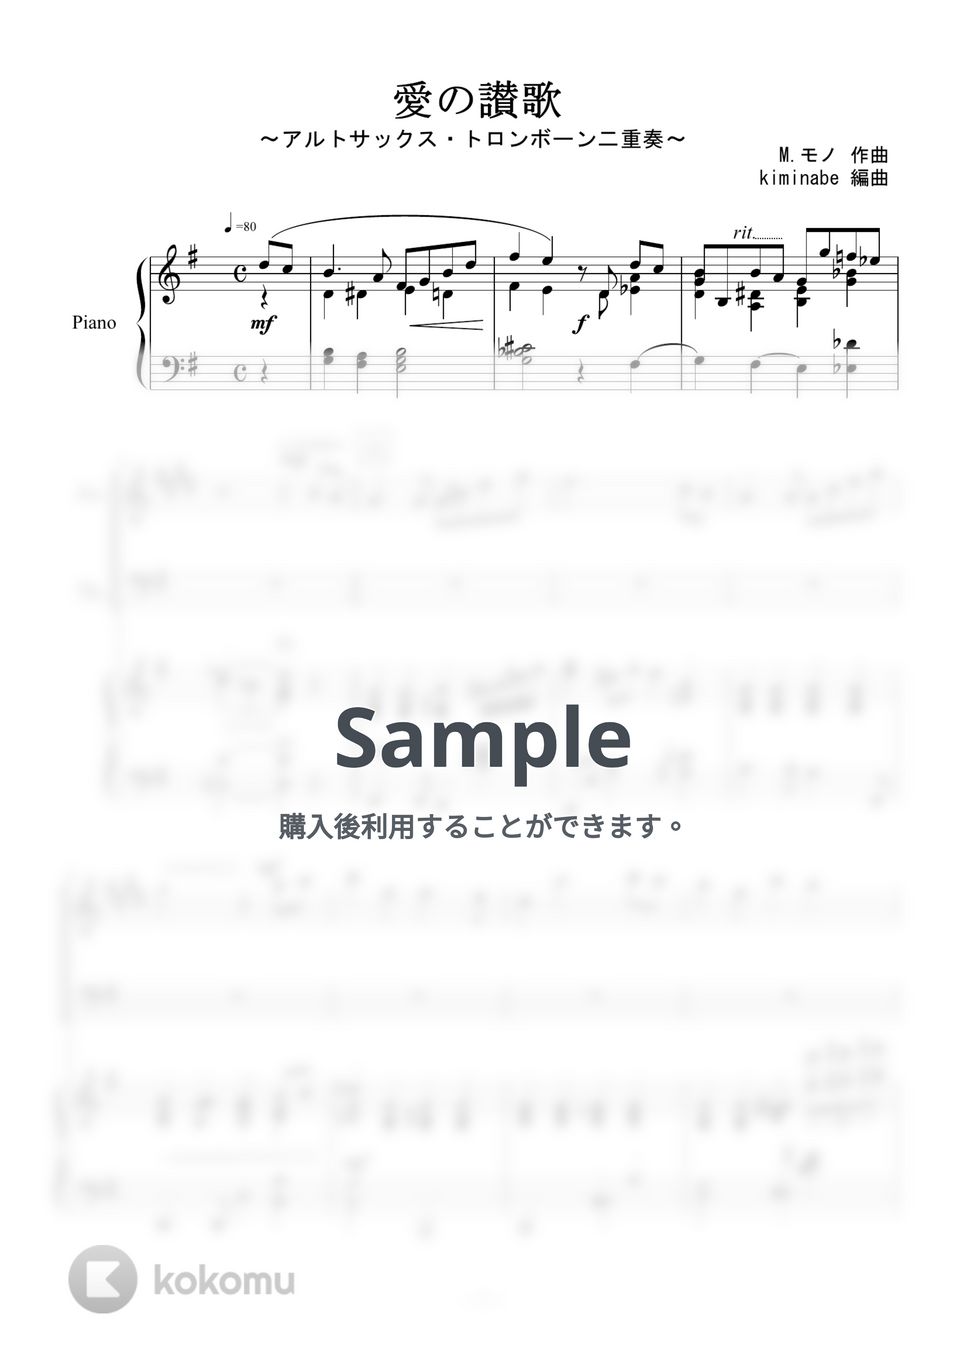 越路吹雪 - 愛の讃歌 (アルトサックス・トロンボーン二重奏) by kiminabe